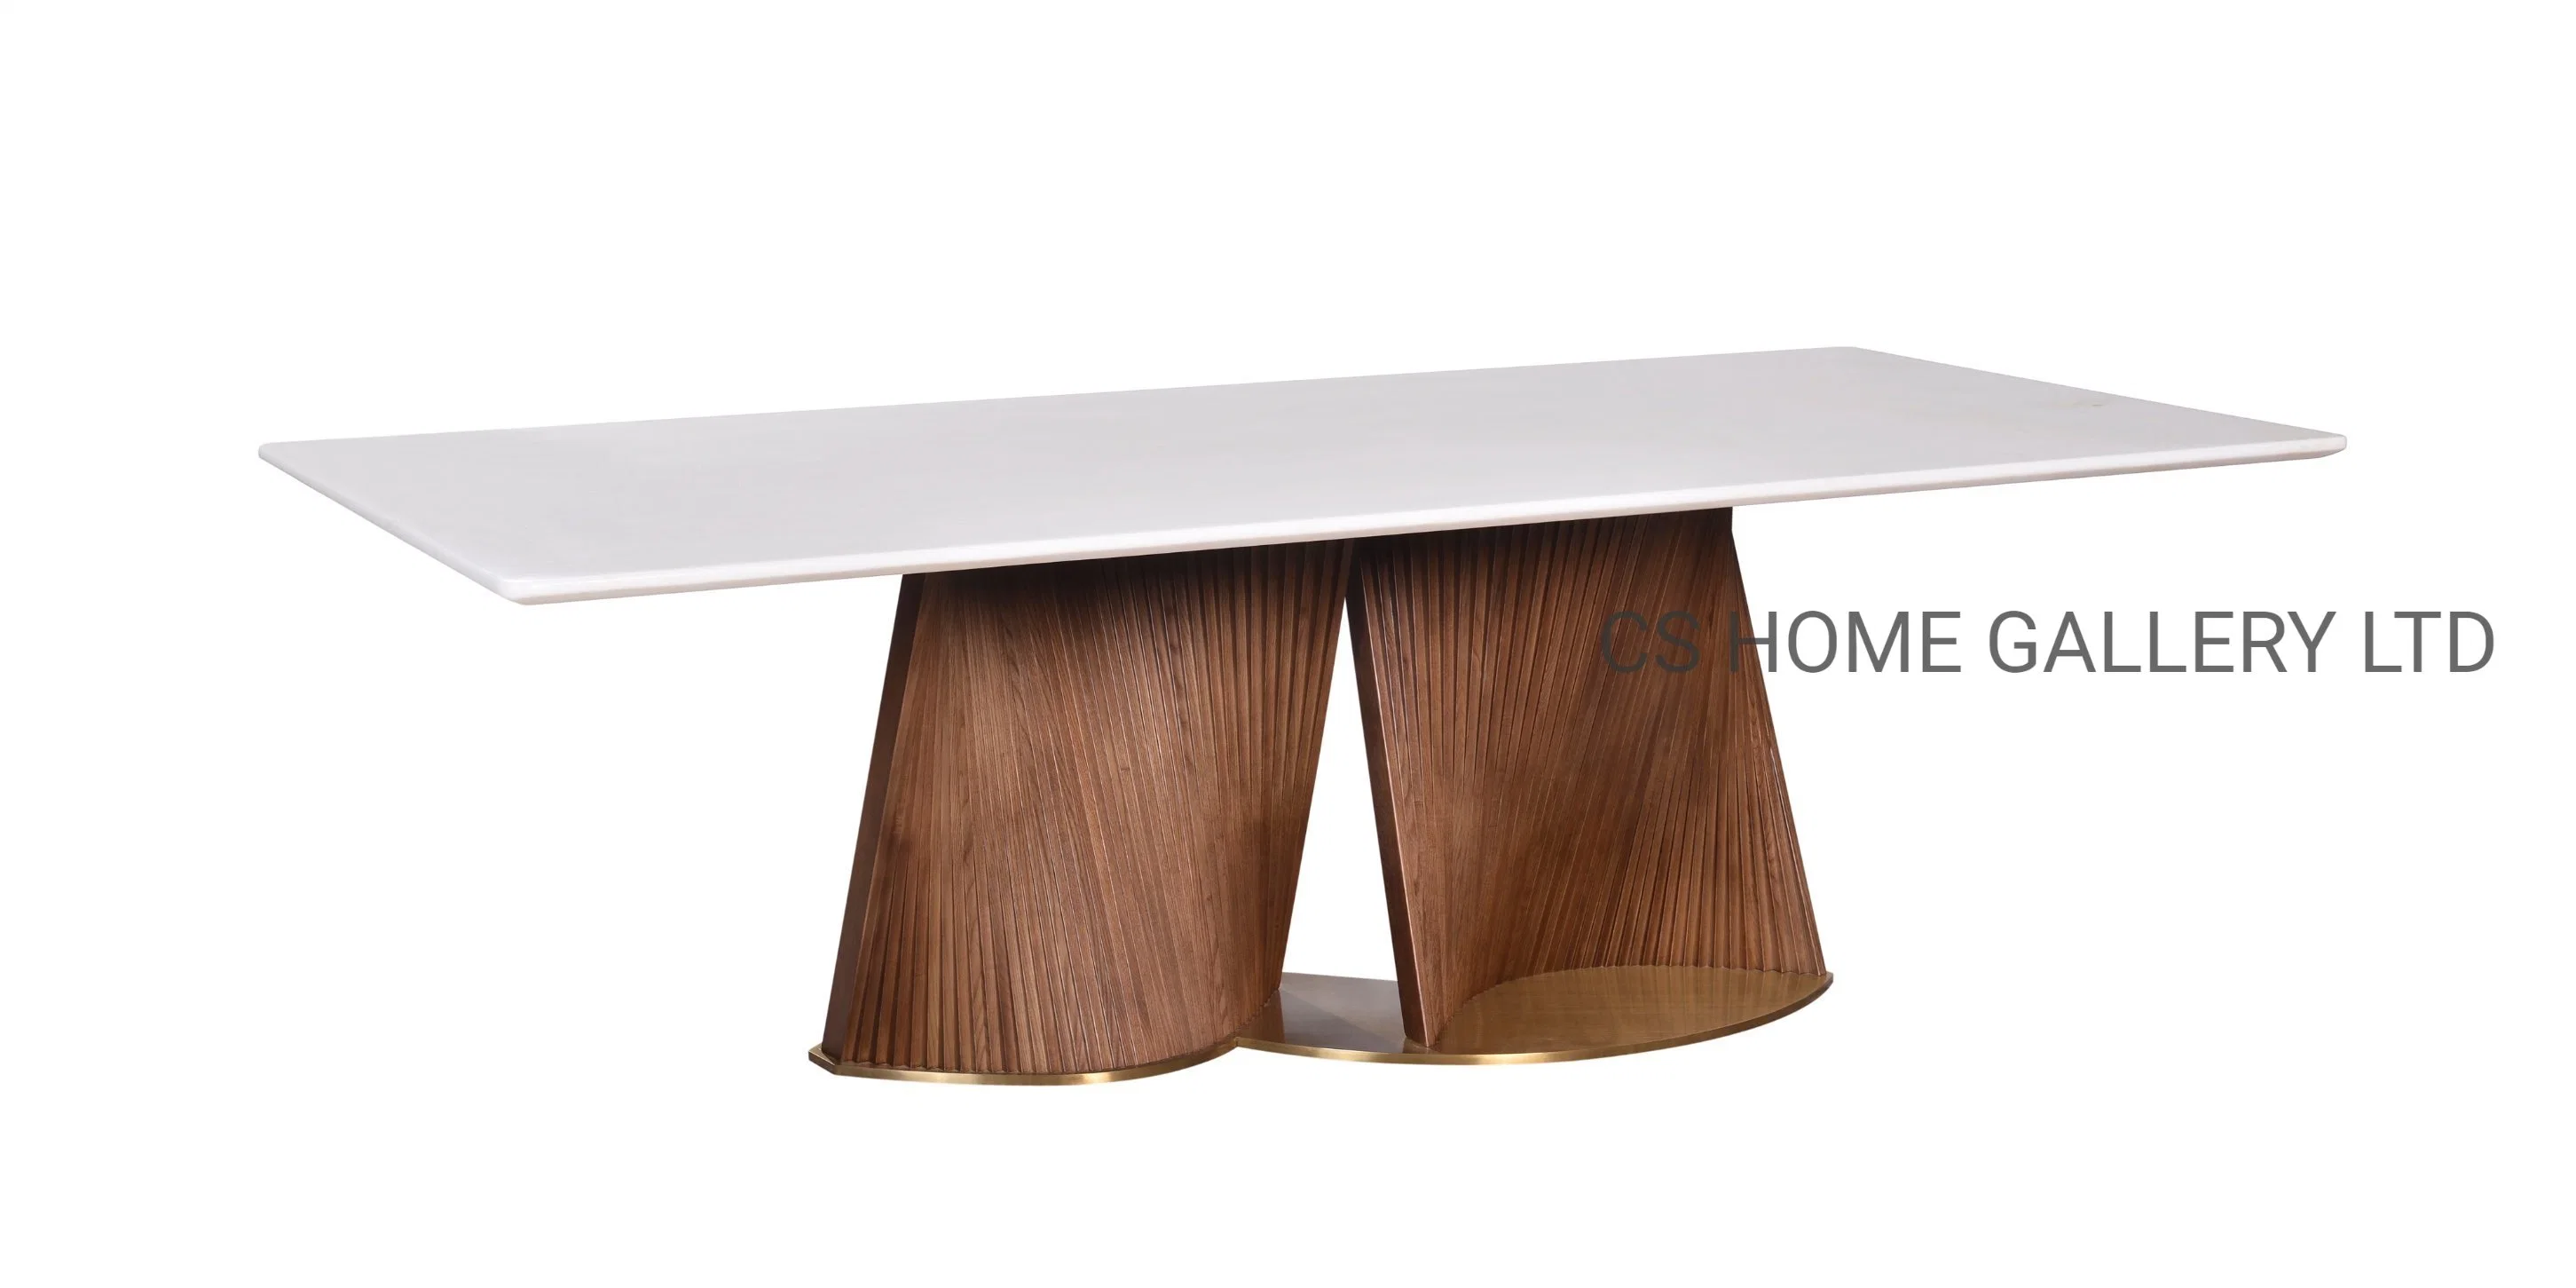 fait sur mesure Accueil moderne en bois marbre naturel en table à manger de meubles en acier inoxydable